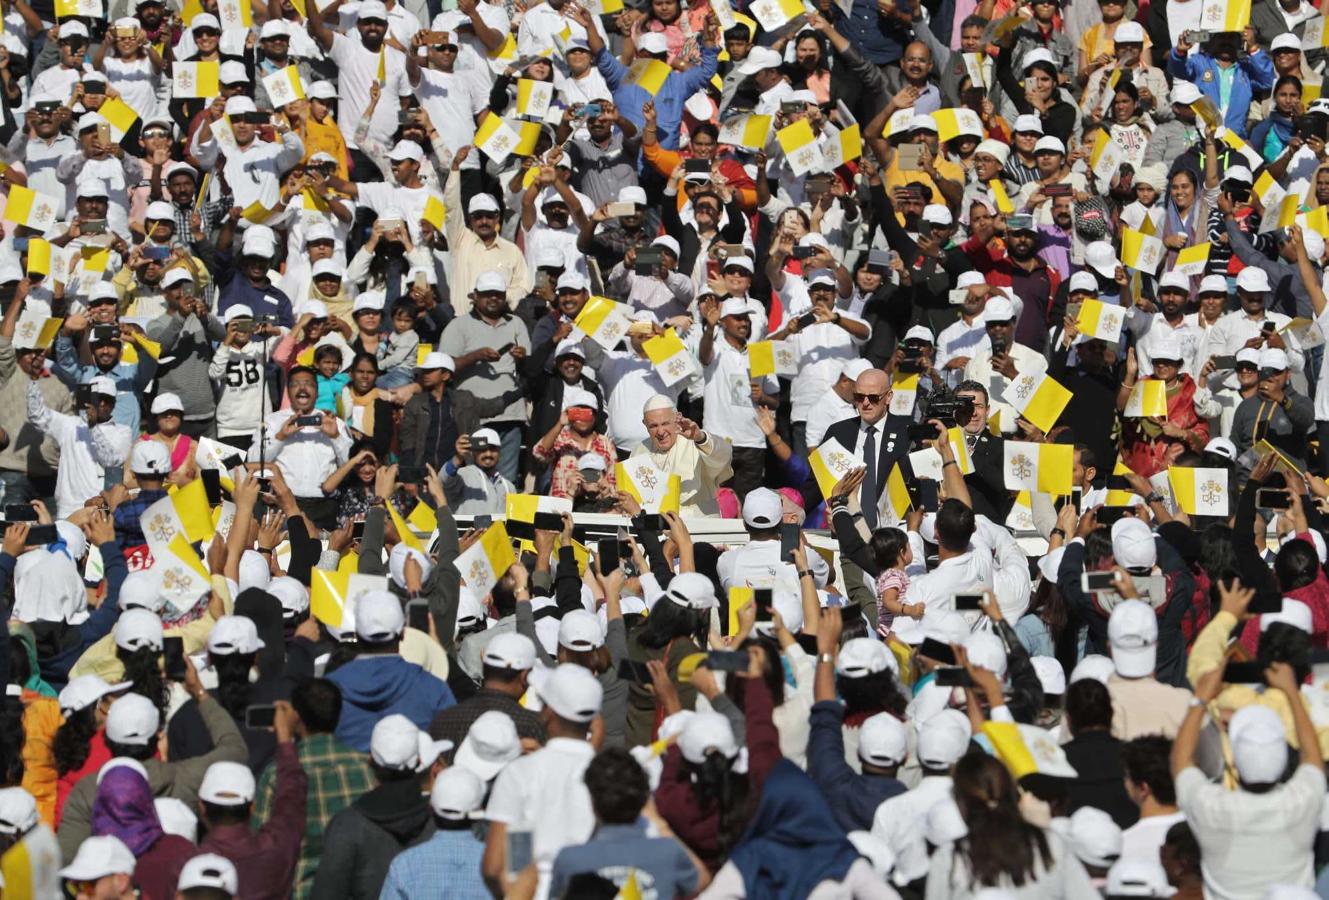 El Papa Francisco saluda a la multirud al llegar a una celebración eucarística para 170.000 católicos en el estadio de la Ciudad Deportiva Zayed, en Abu Dabi